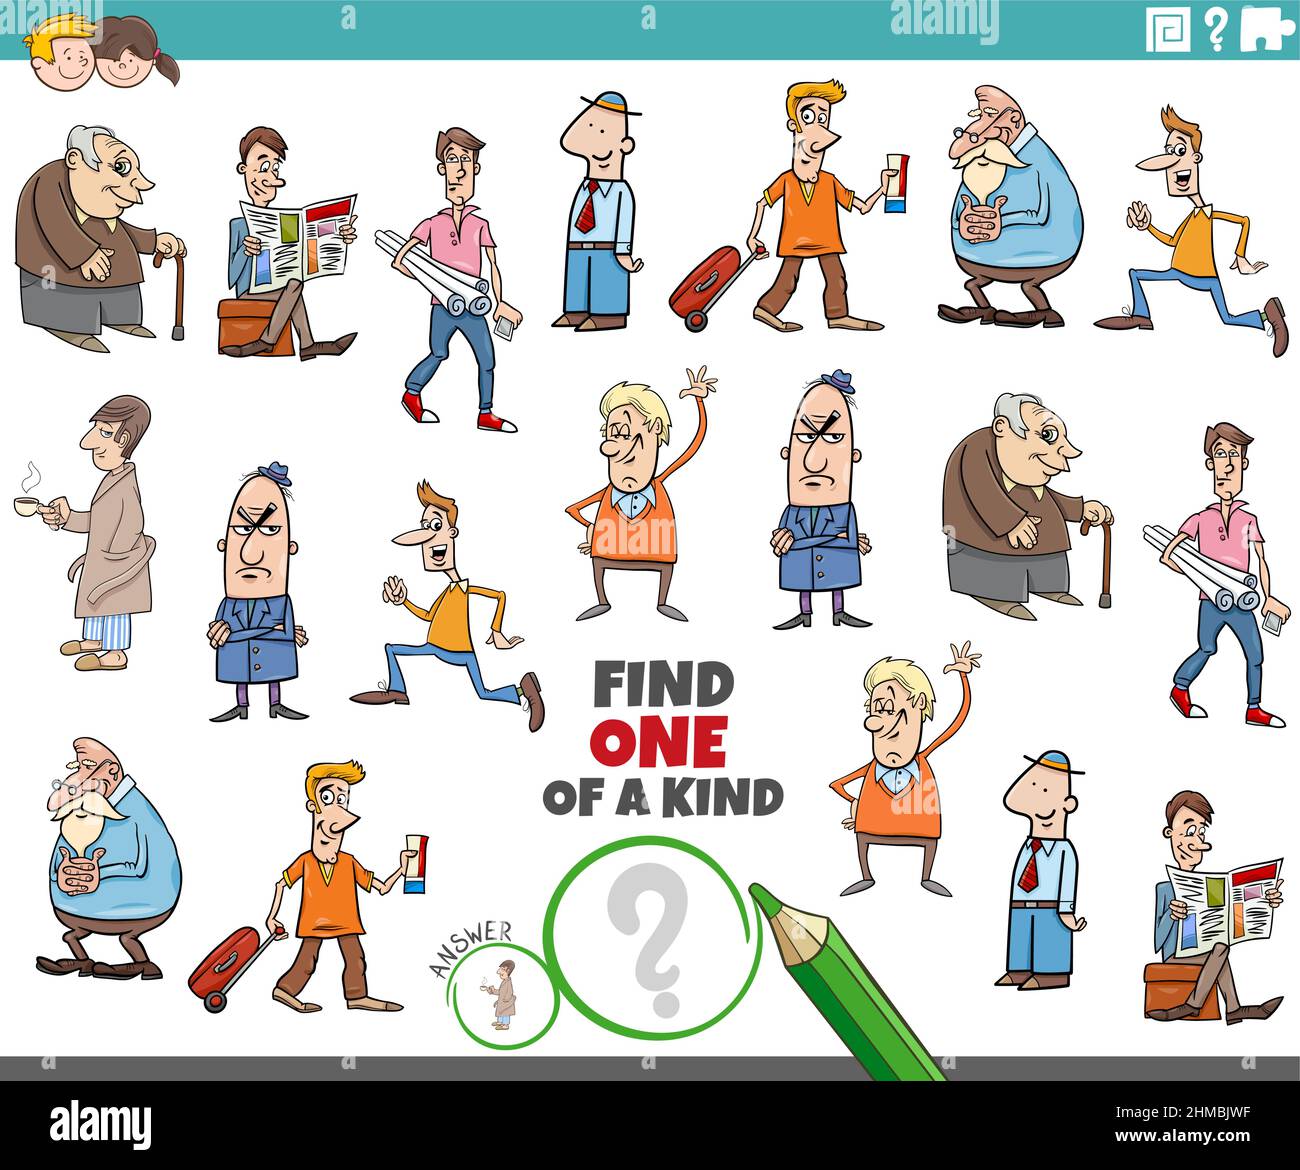 Illustrazione cartoon di trovare uno di un gioco educativo immagine con personaggi fumetti uomini Illustrazione Vettoriale